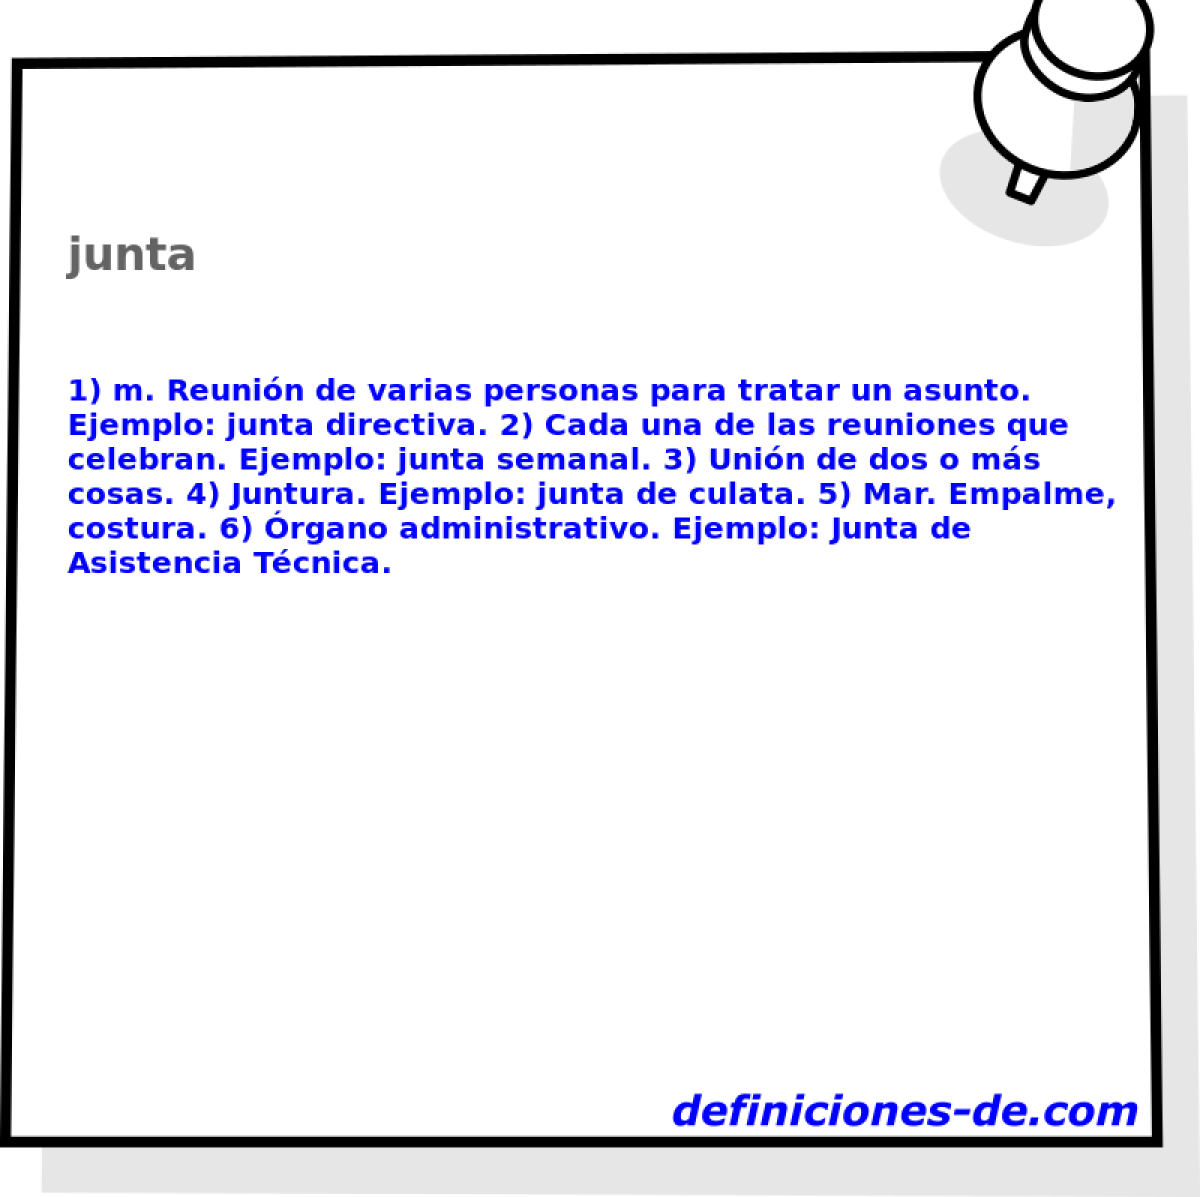 junta 